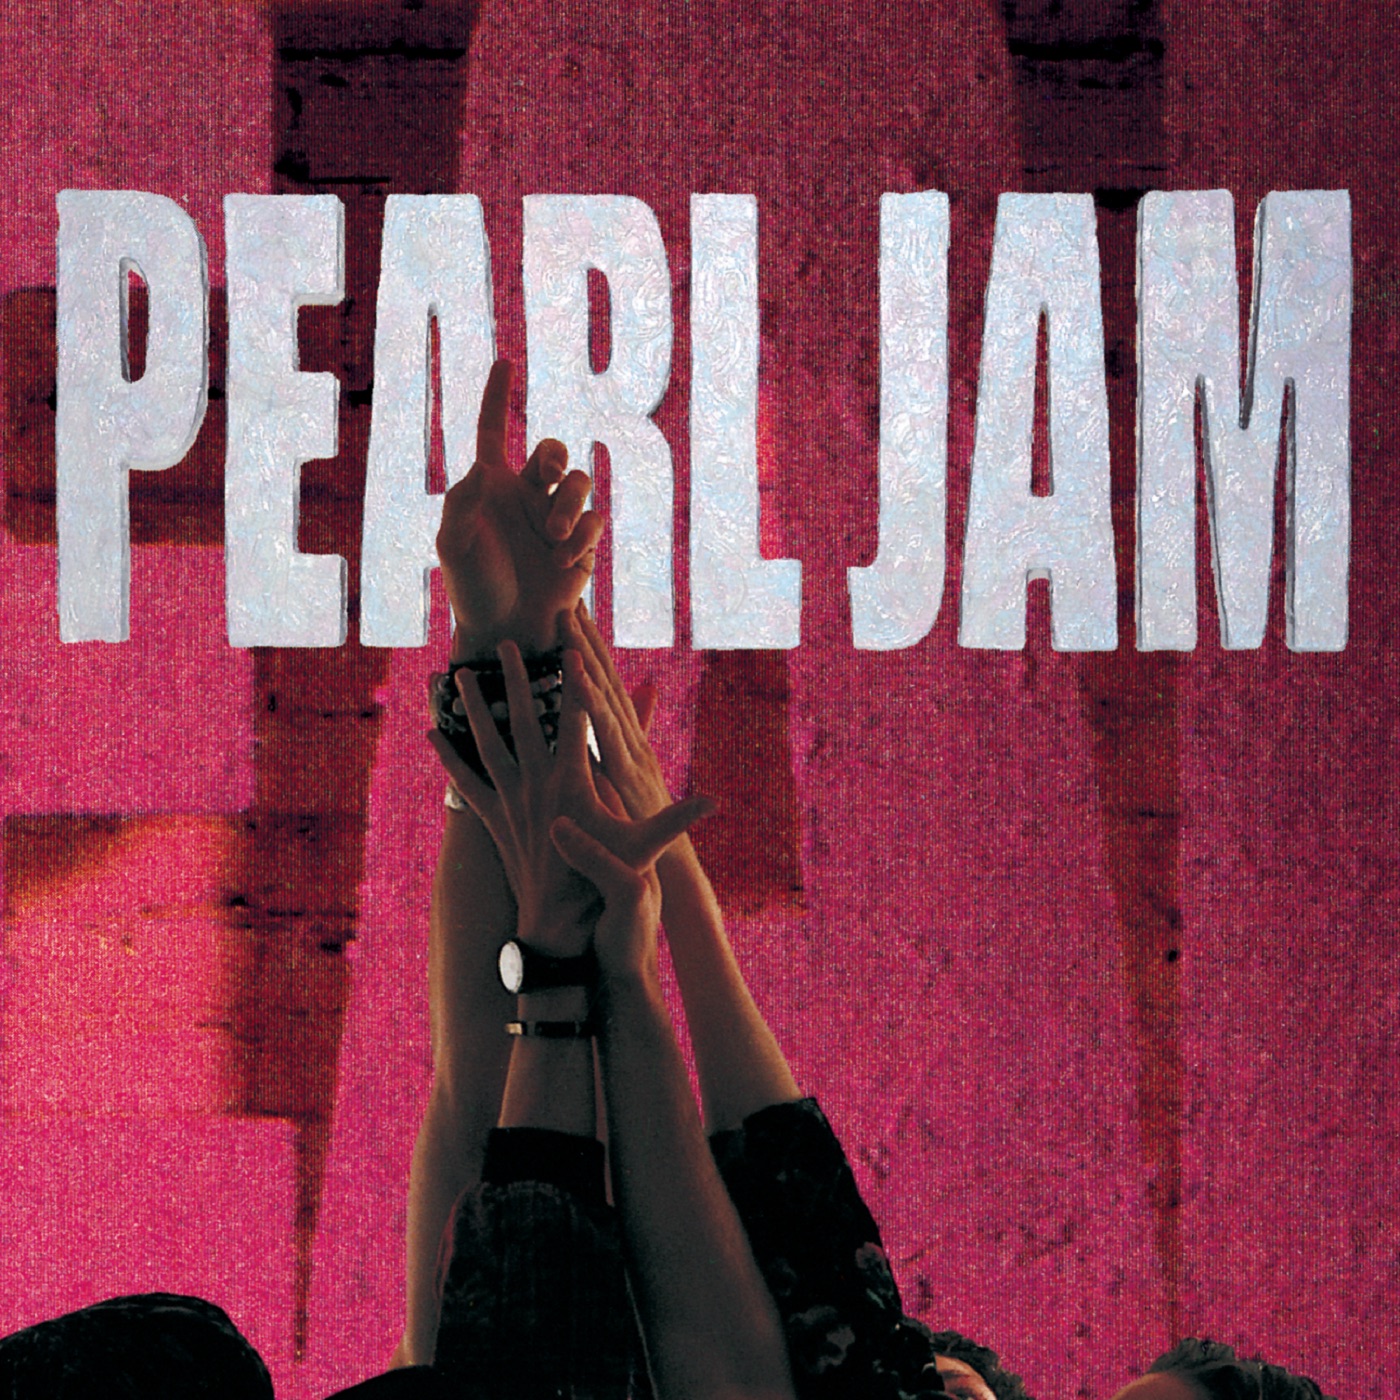 Ten by Pearl Jam